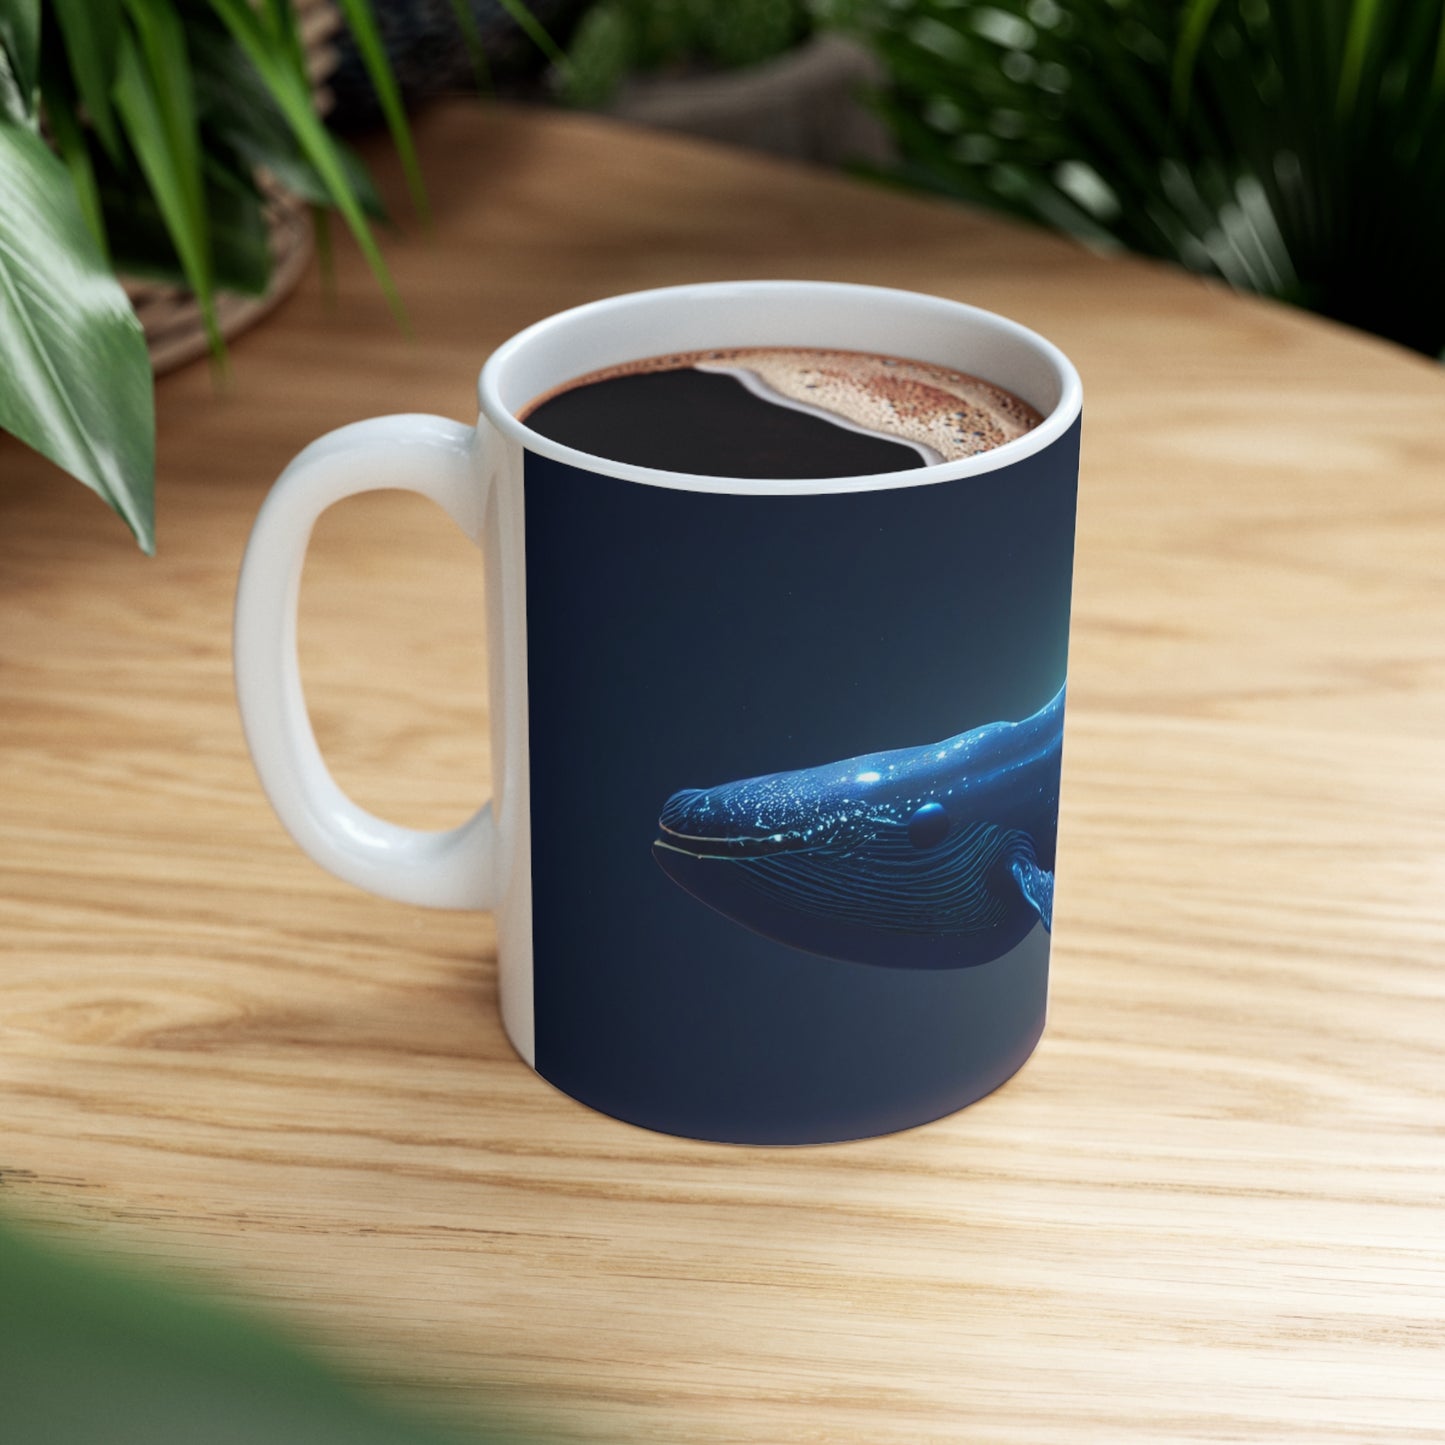 Dreamy Blue whale - Ceramic Mug 11oz